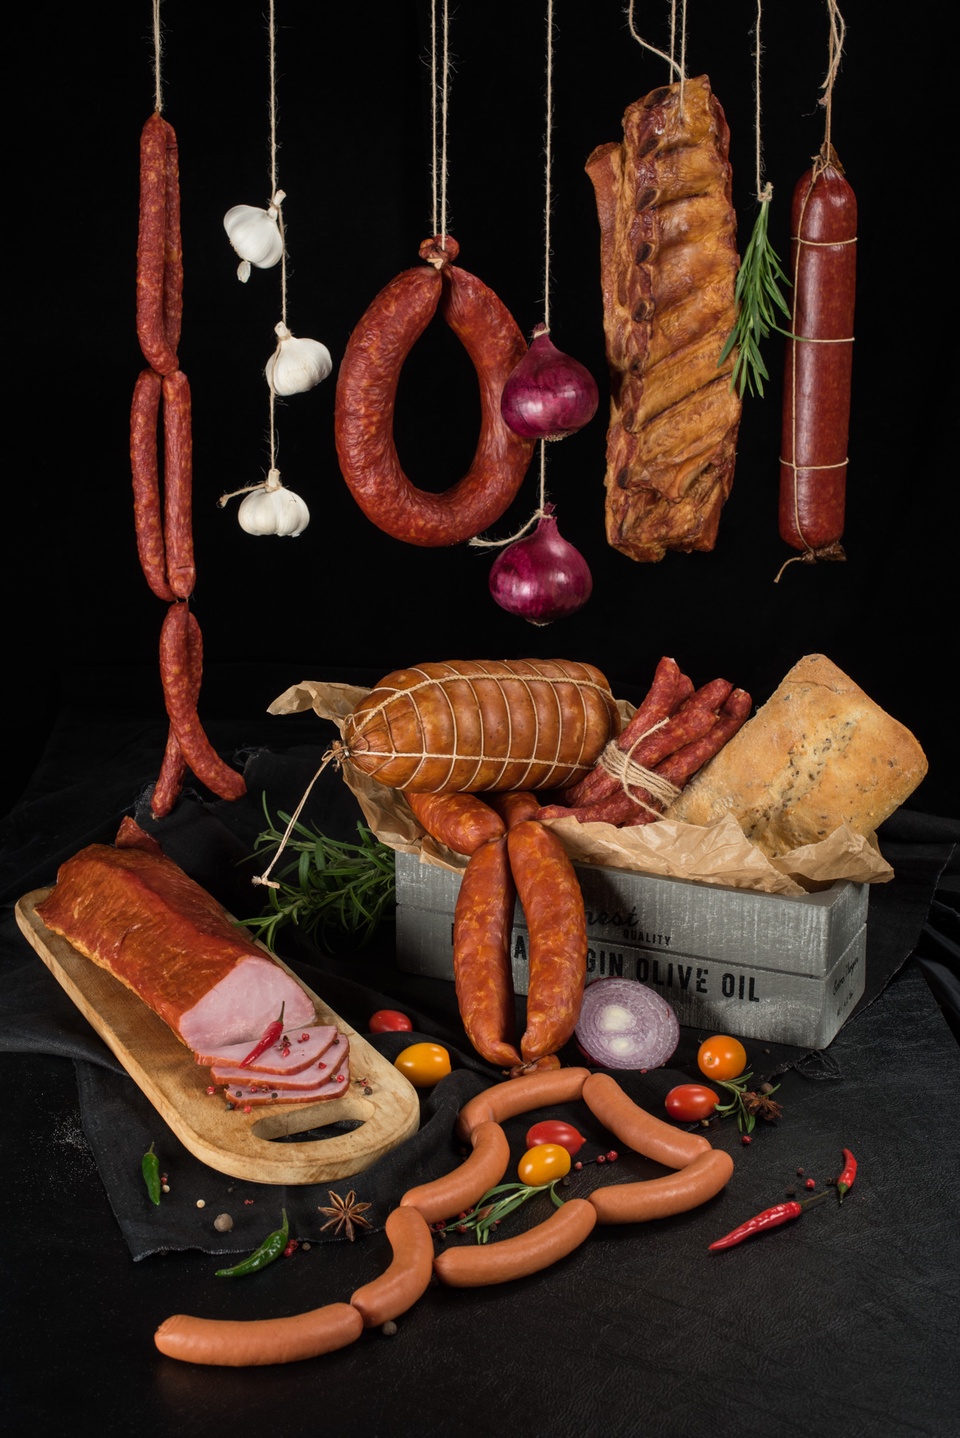 Серия фото для производства колбасных изделий - 0 ₽, заказать онлайн.